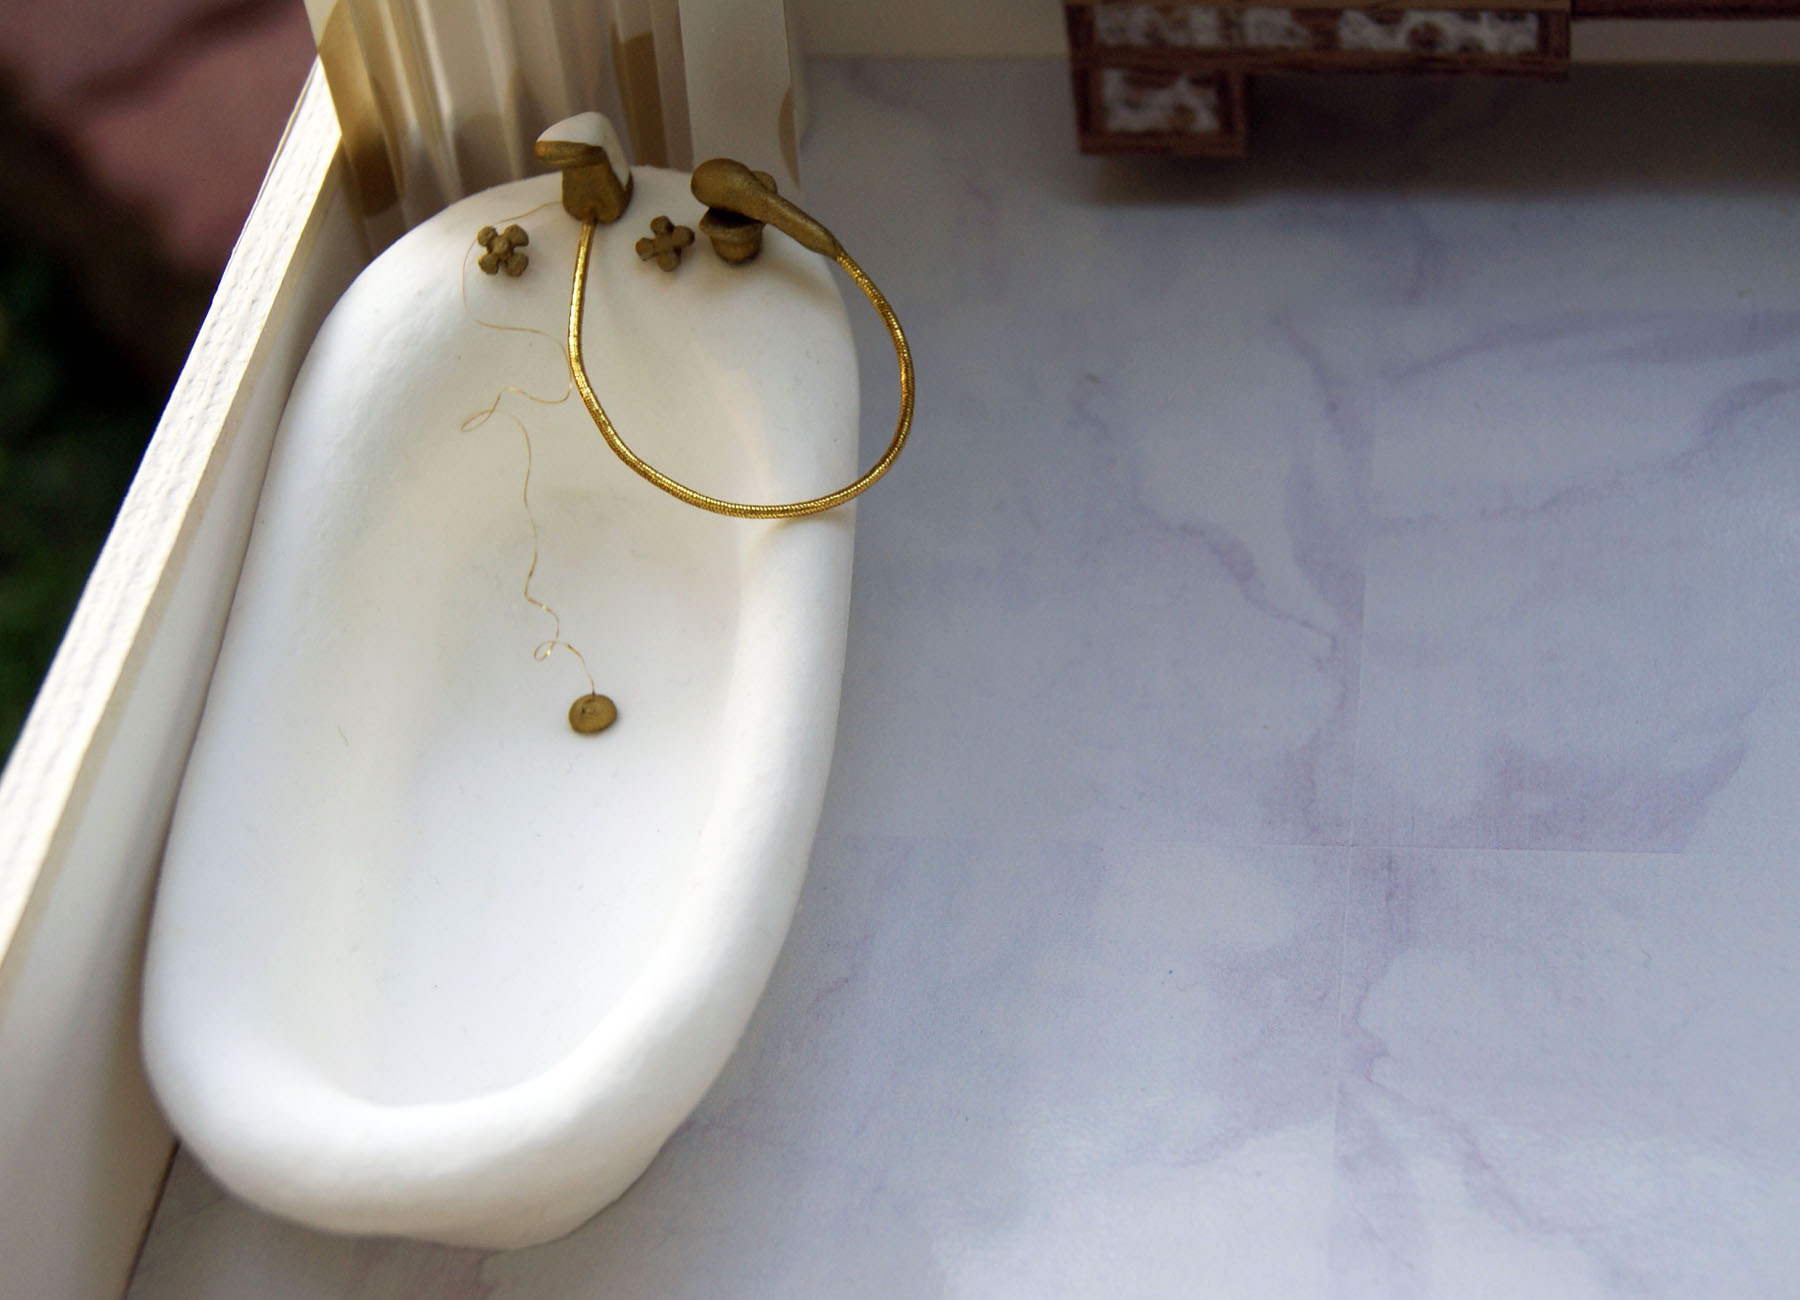 紙紮古典搪瓷浴缸俯視